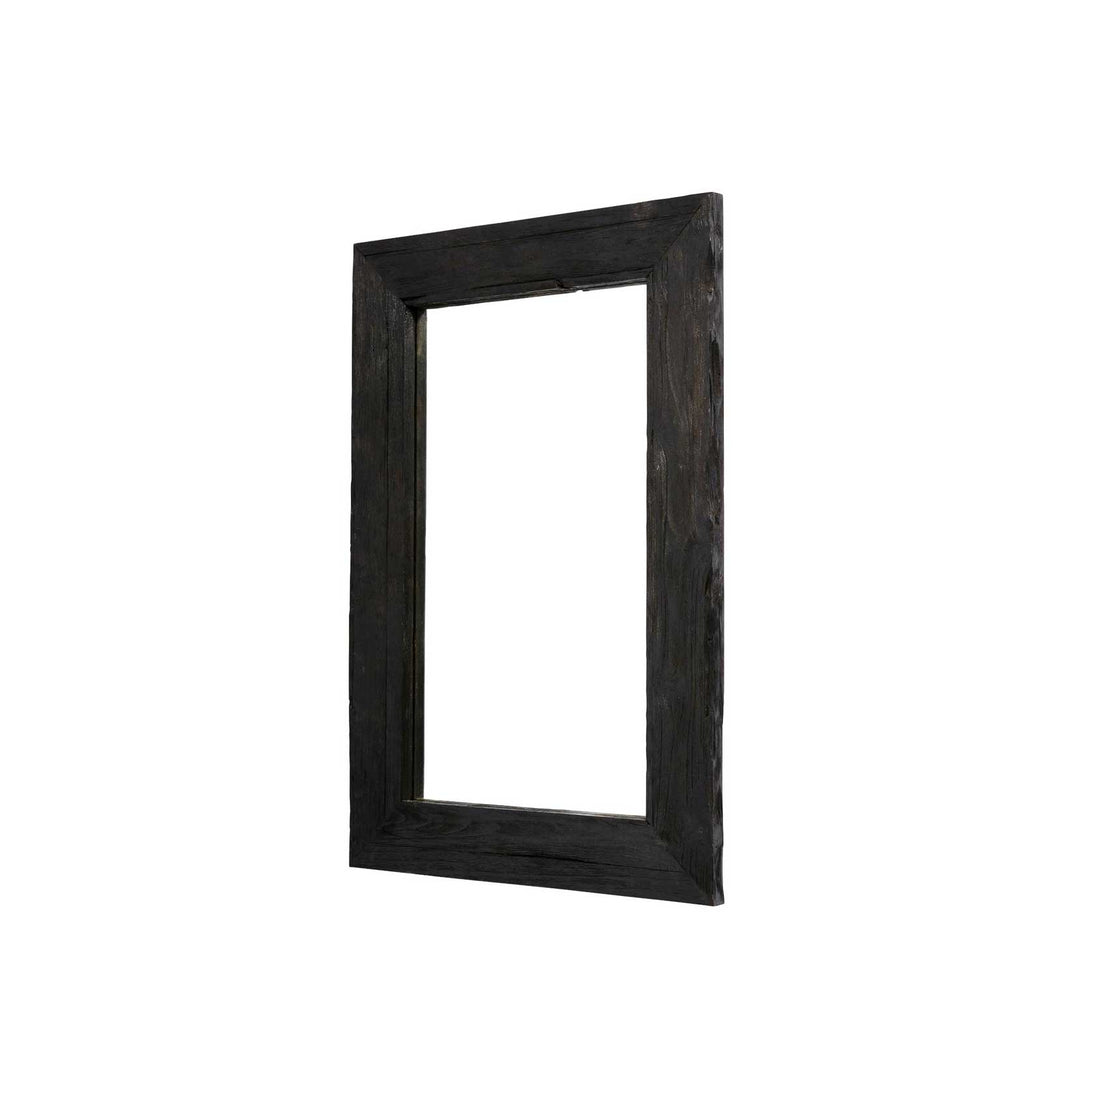 MUUBS - Spiegelmodell Aino (Rahmen aus schwarzem Teakholz) - 60x90 cm 